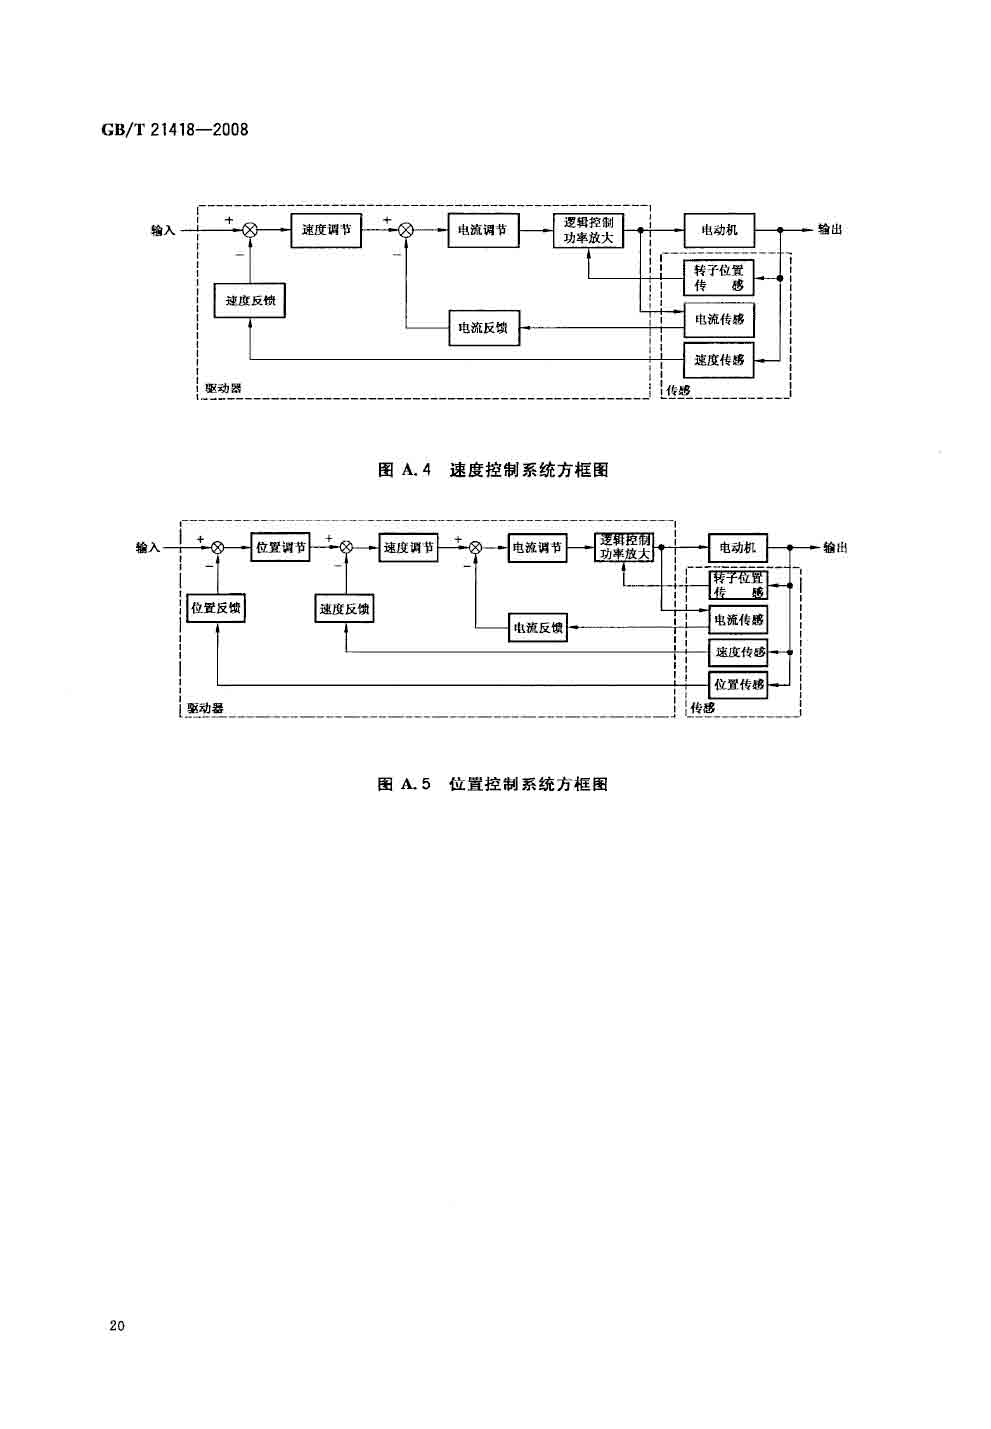 GB/T 21418-2008永磁无刷电动机系统通用技术条件—艾普智能.jpg